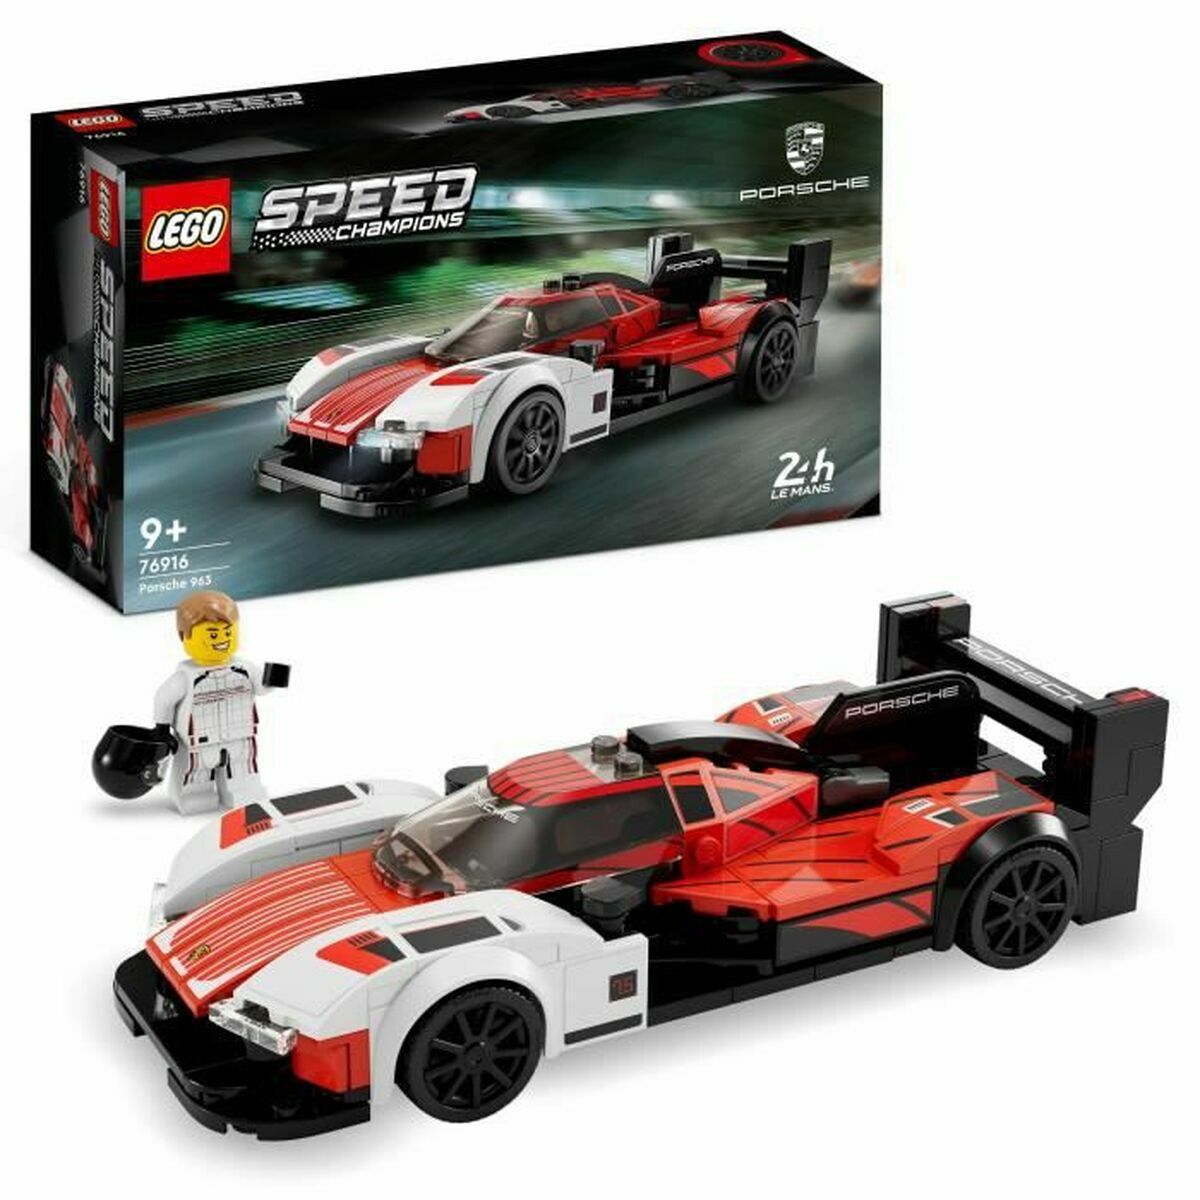 Läs mer om Playset Lego 76916 Speed Champions: Porsche 963